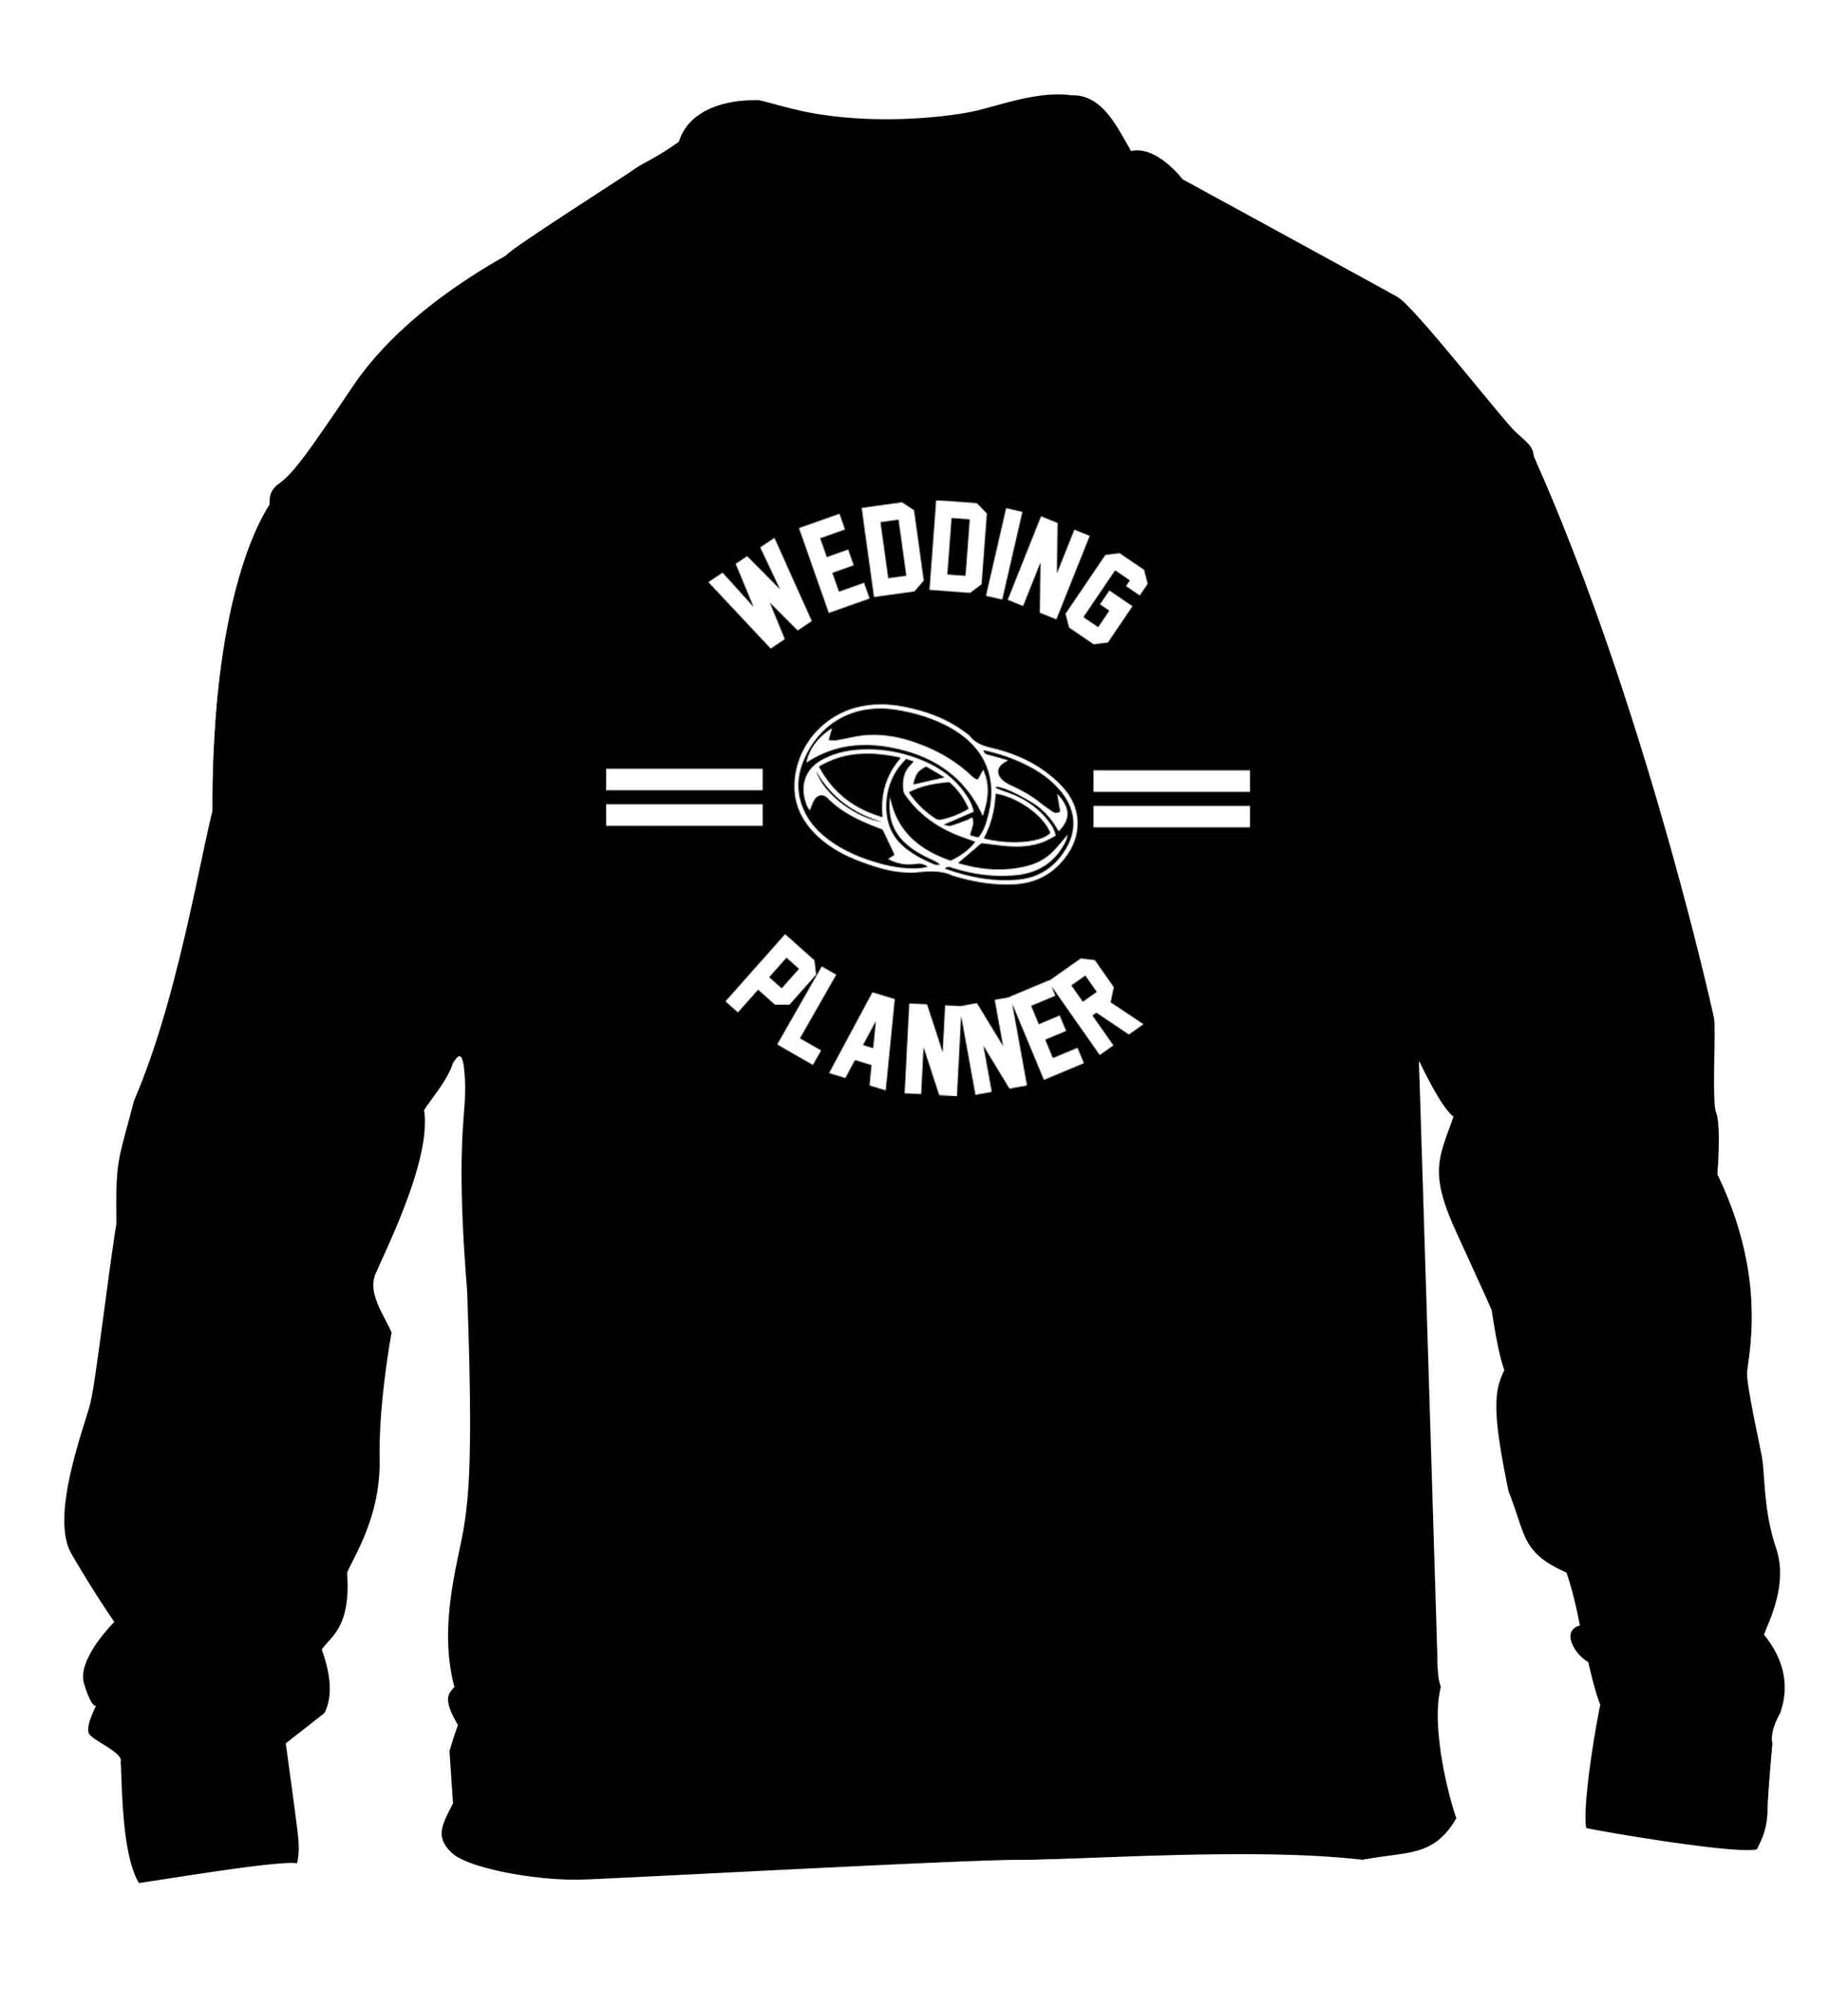 Wedding planner children's black sweater 12-13 Years